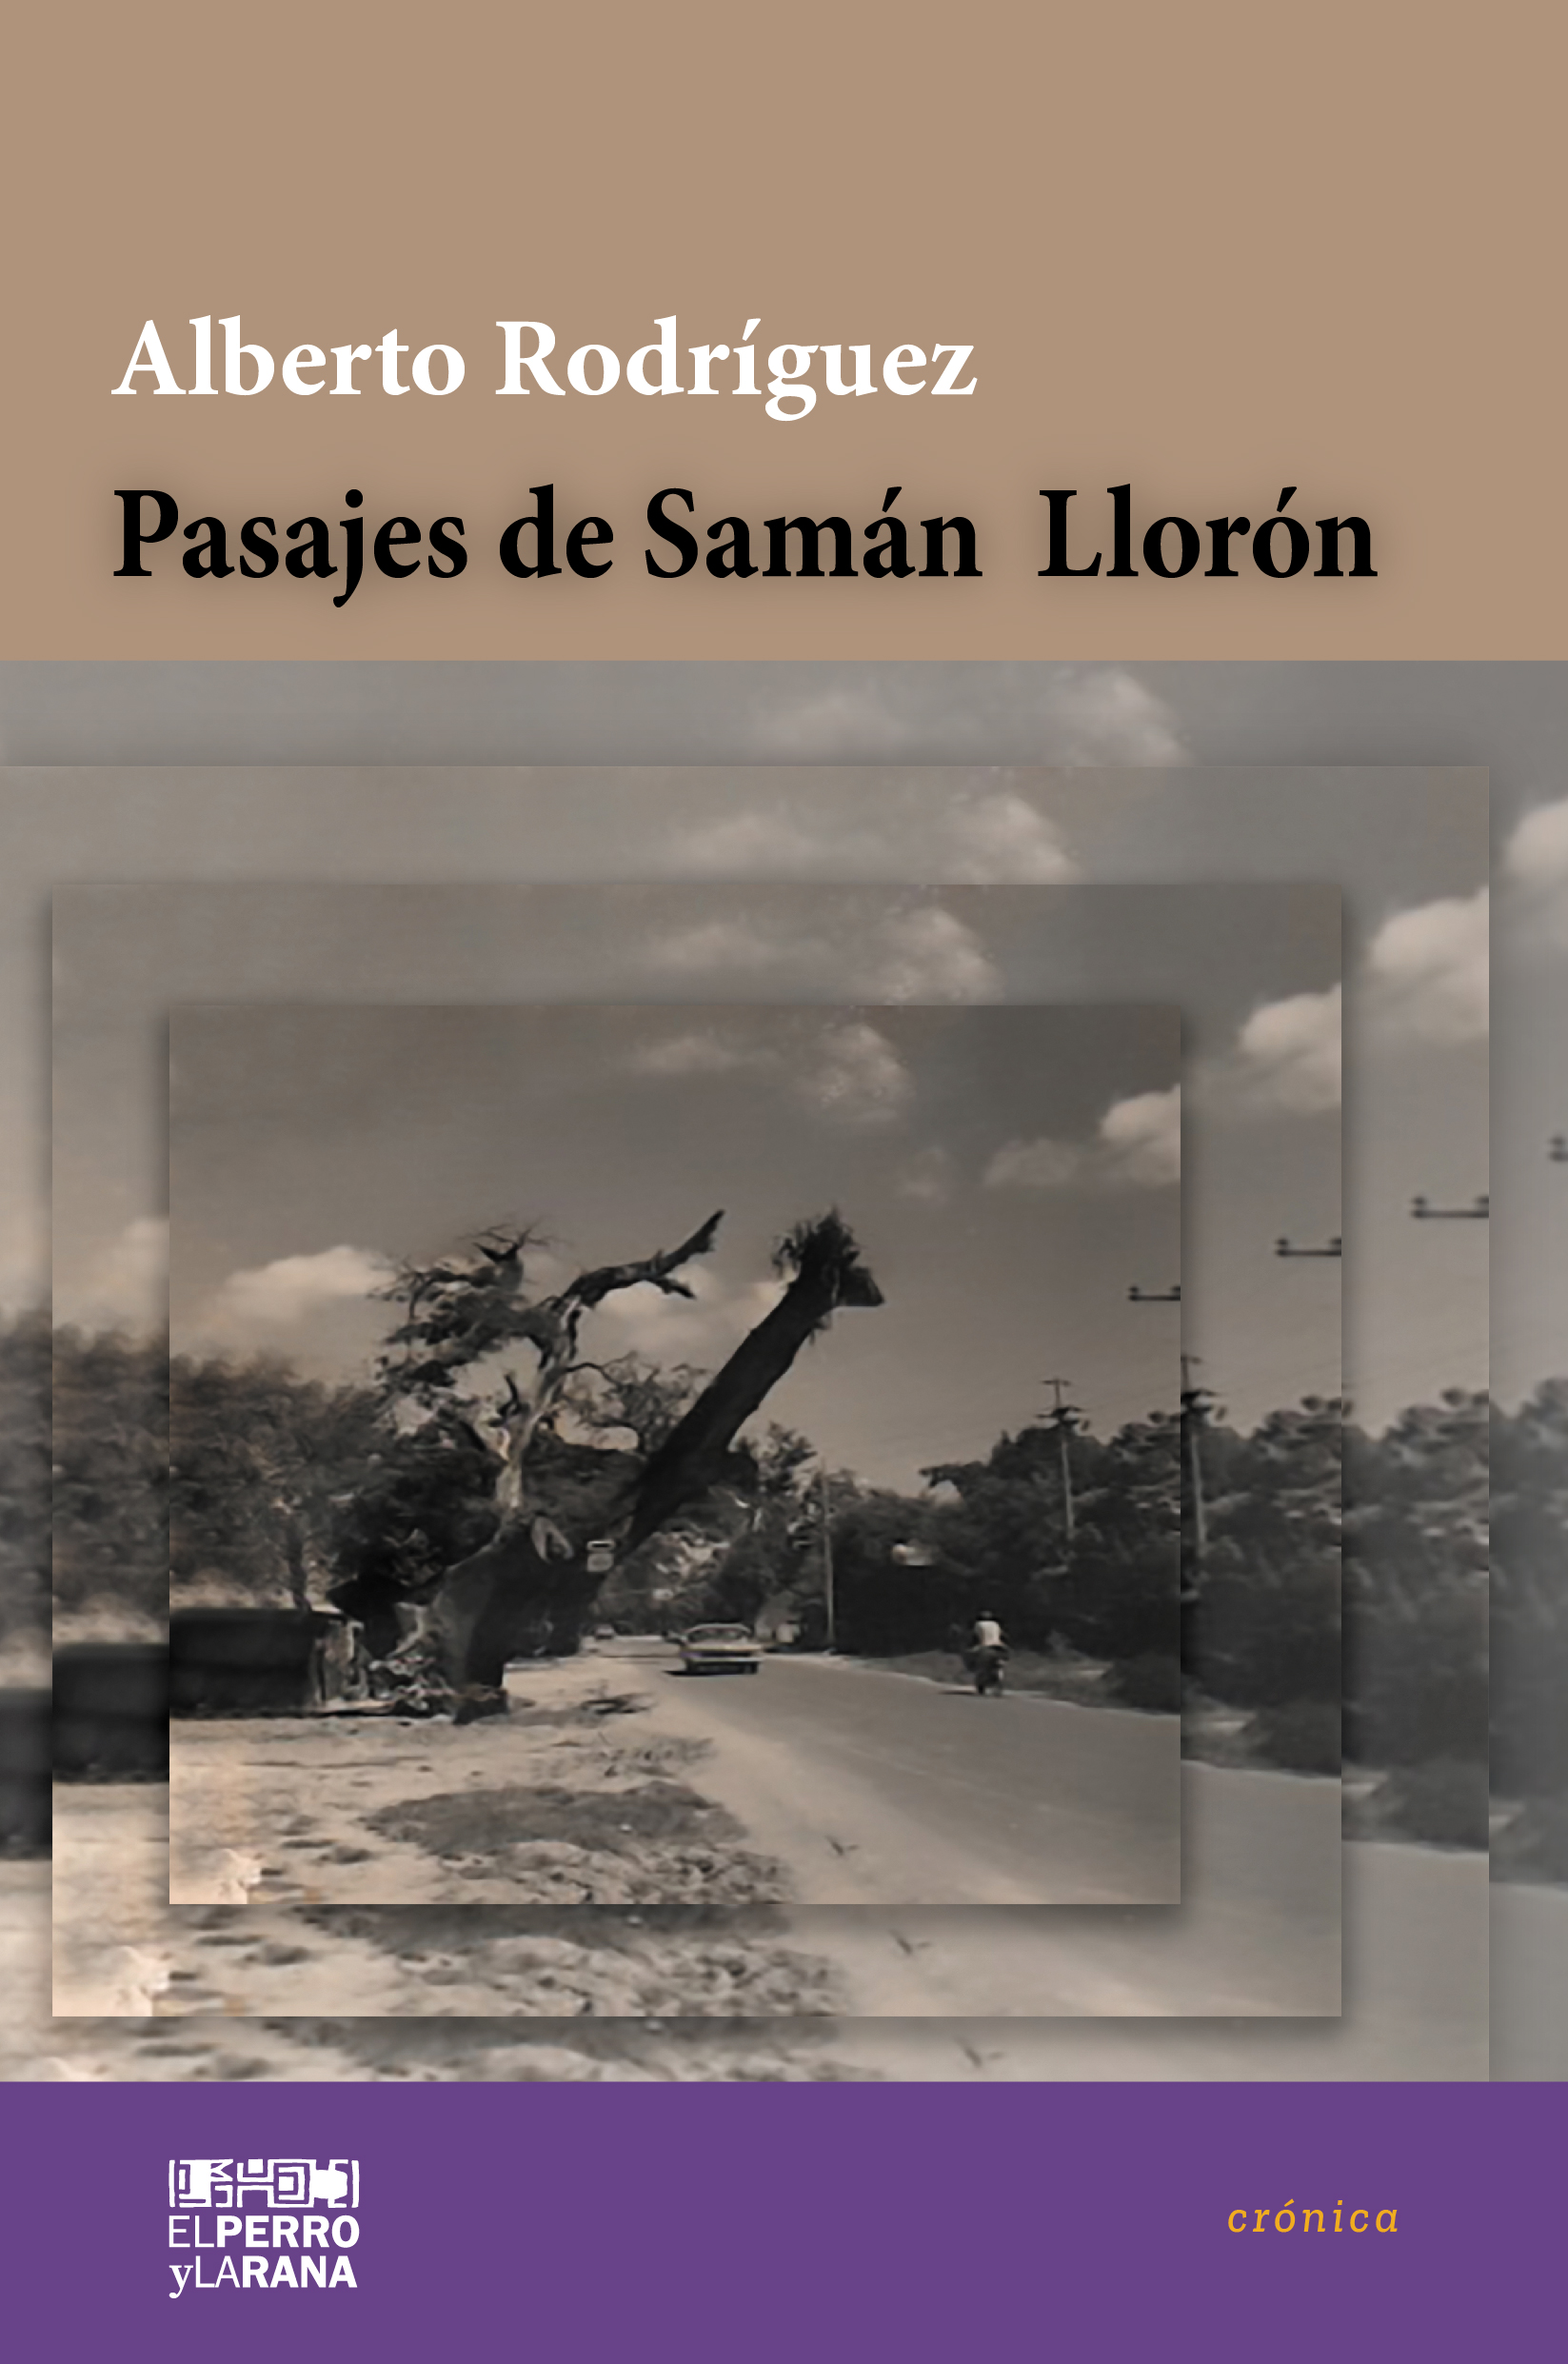 Pasajes de Samán Llorón